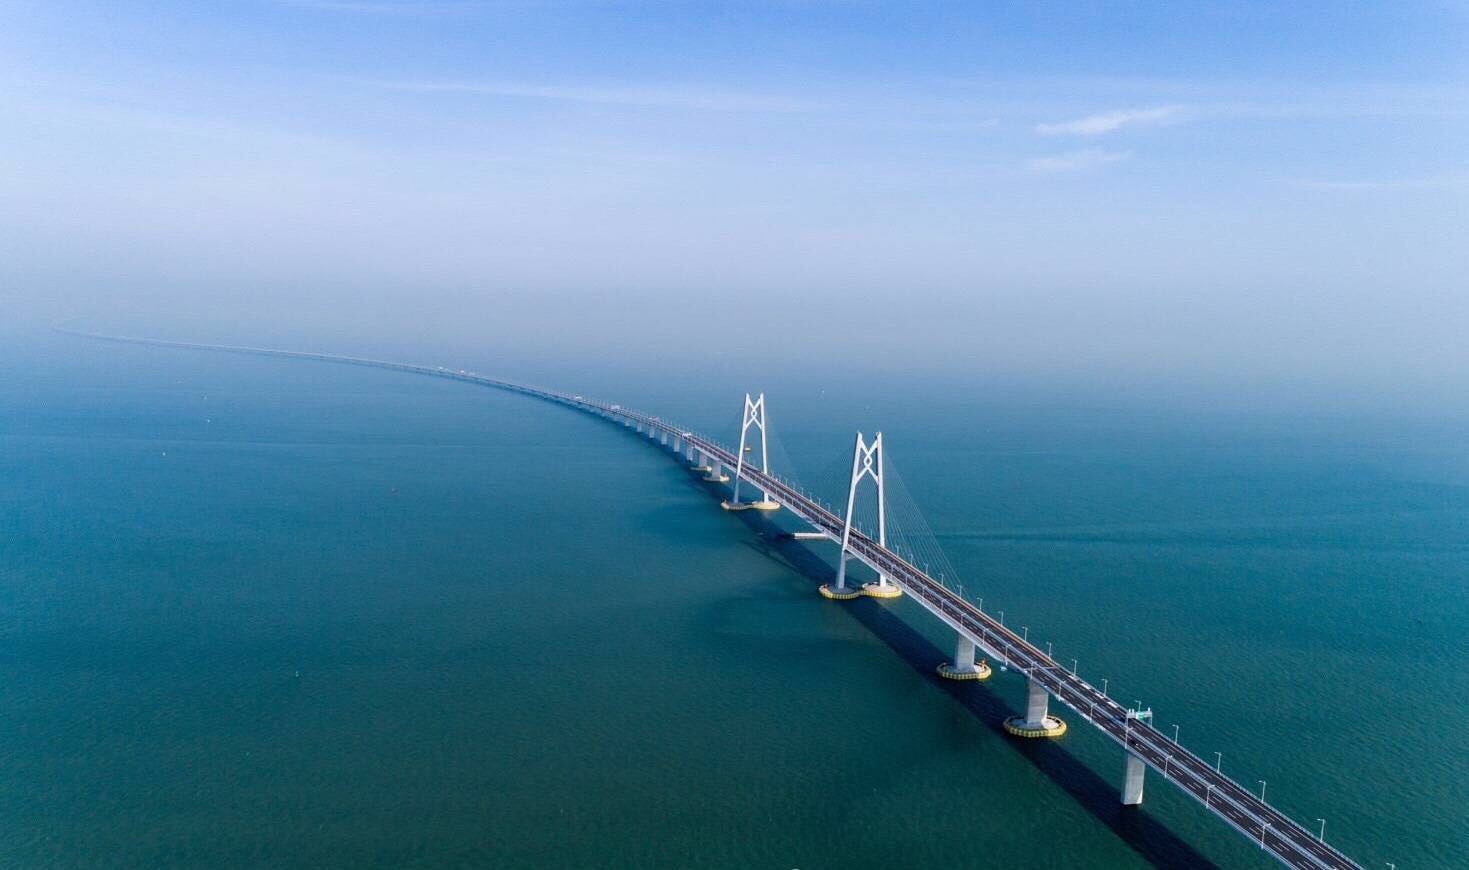 中国十大现代桥梁图片